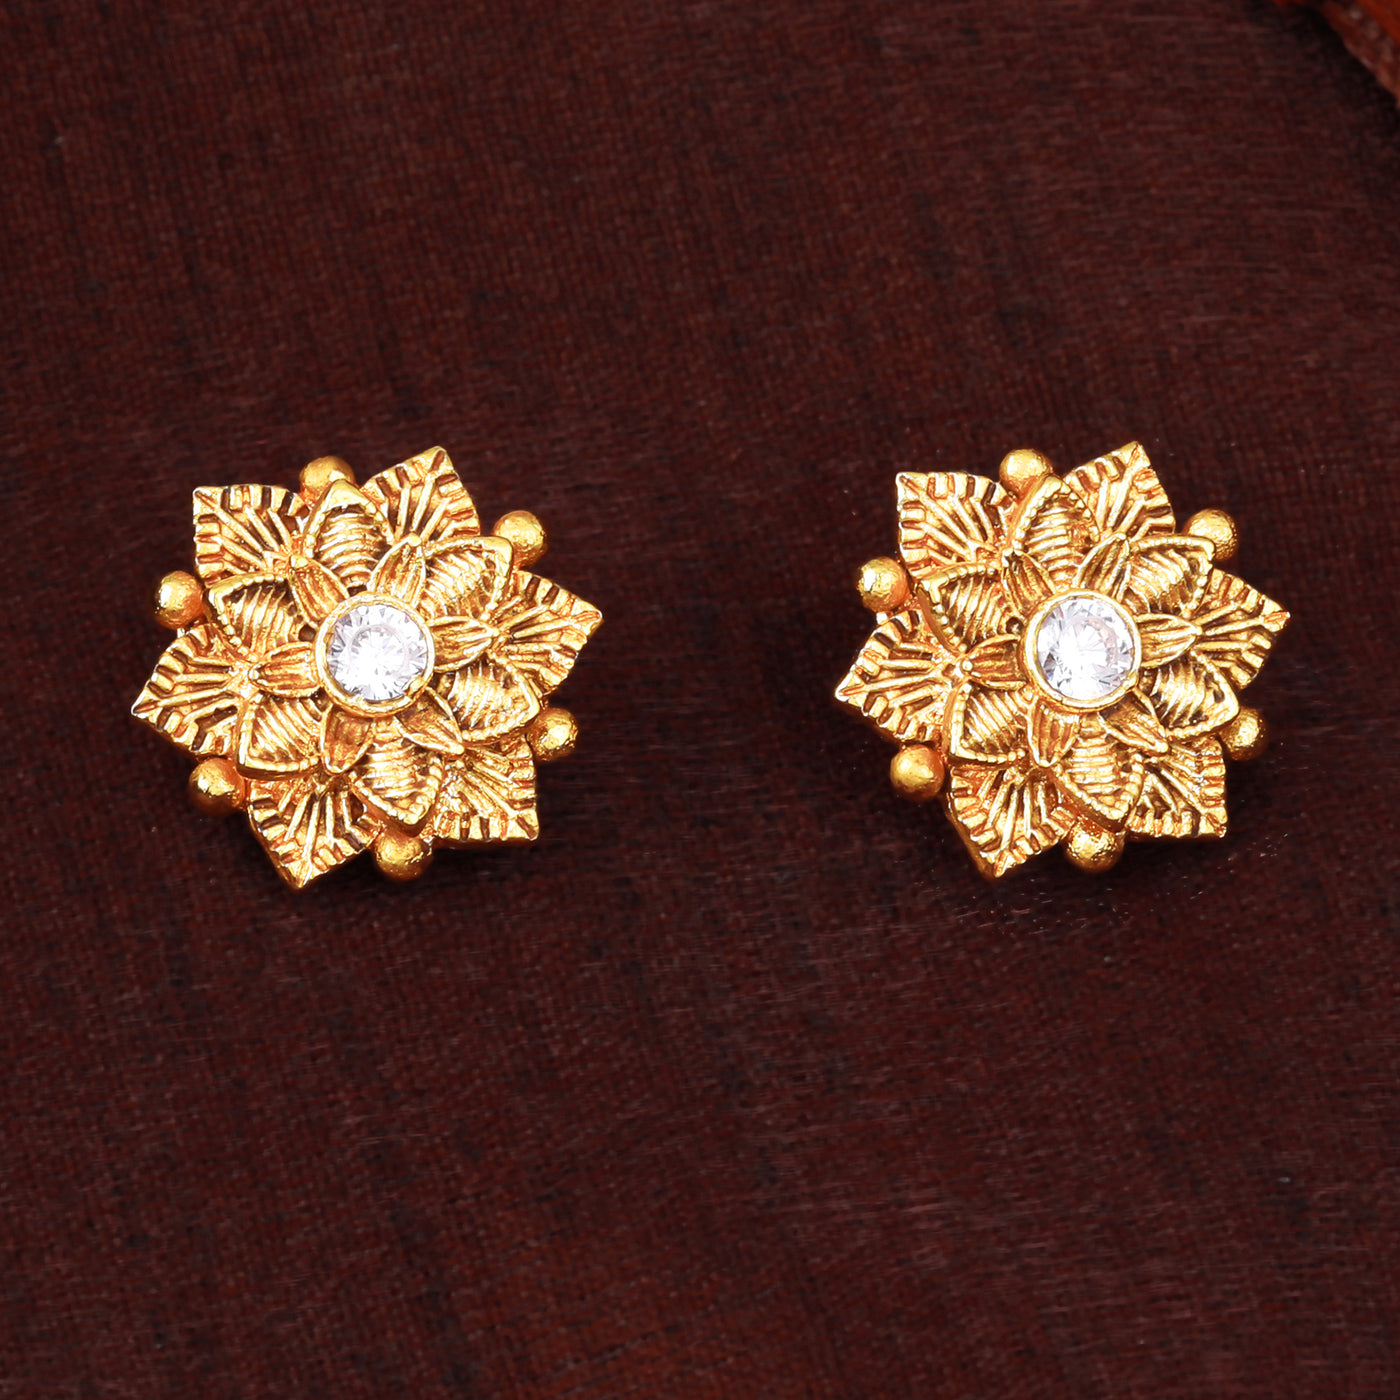 Estele Gold Plated Flower Designer Matt Finish Stud Earrings with White Crystals for Women